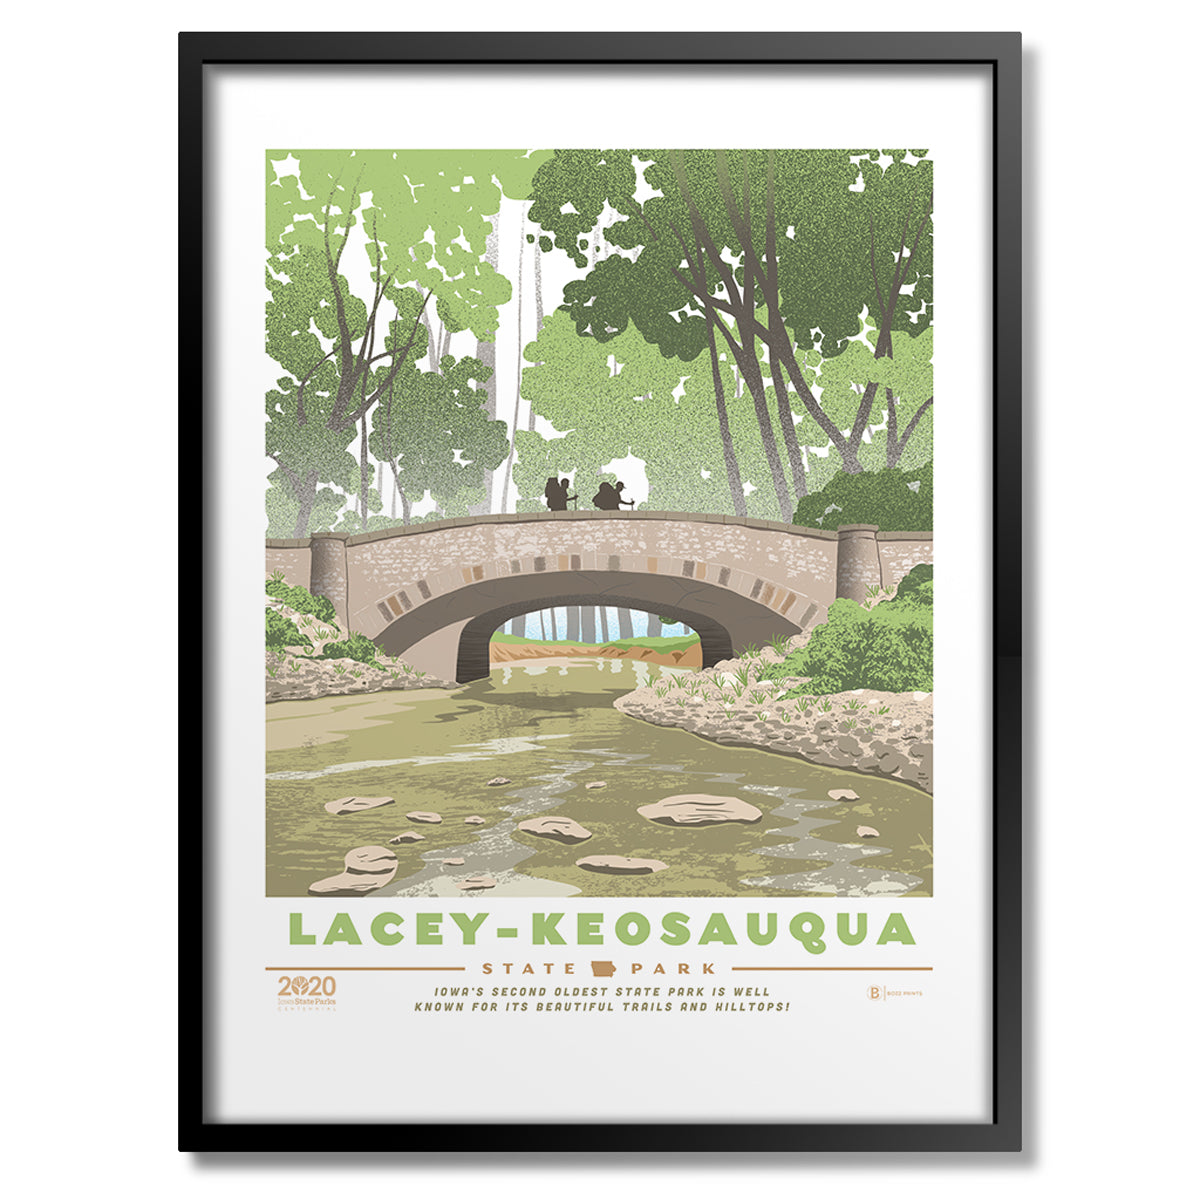 Lacey-Keosauqua State Park Print - Bozz Prints